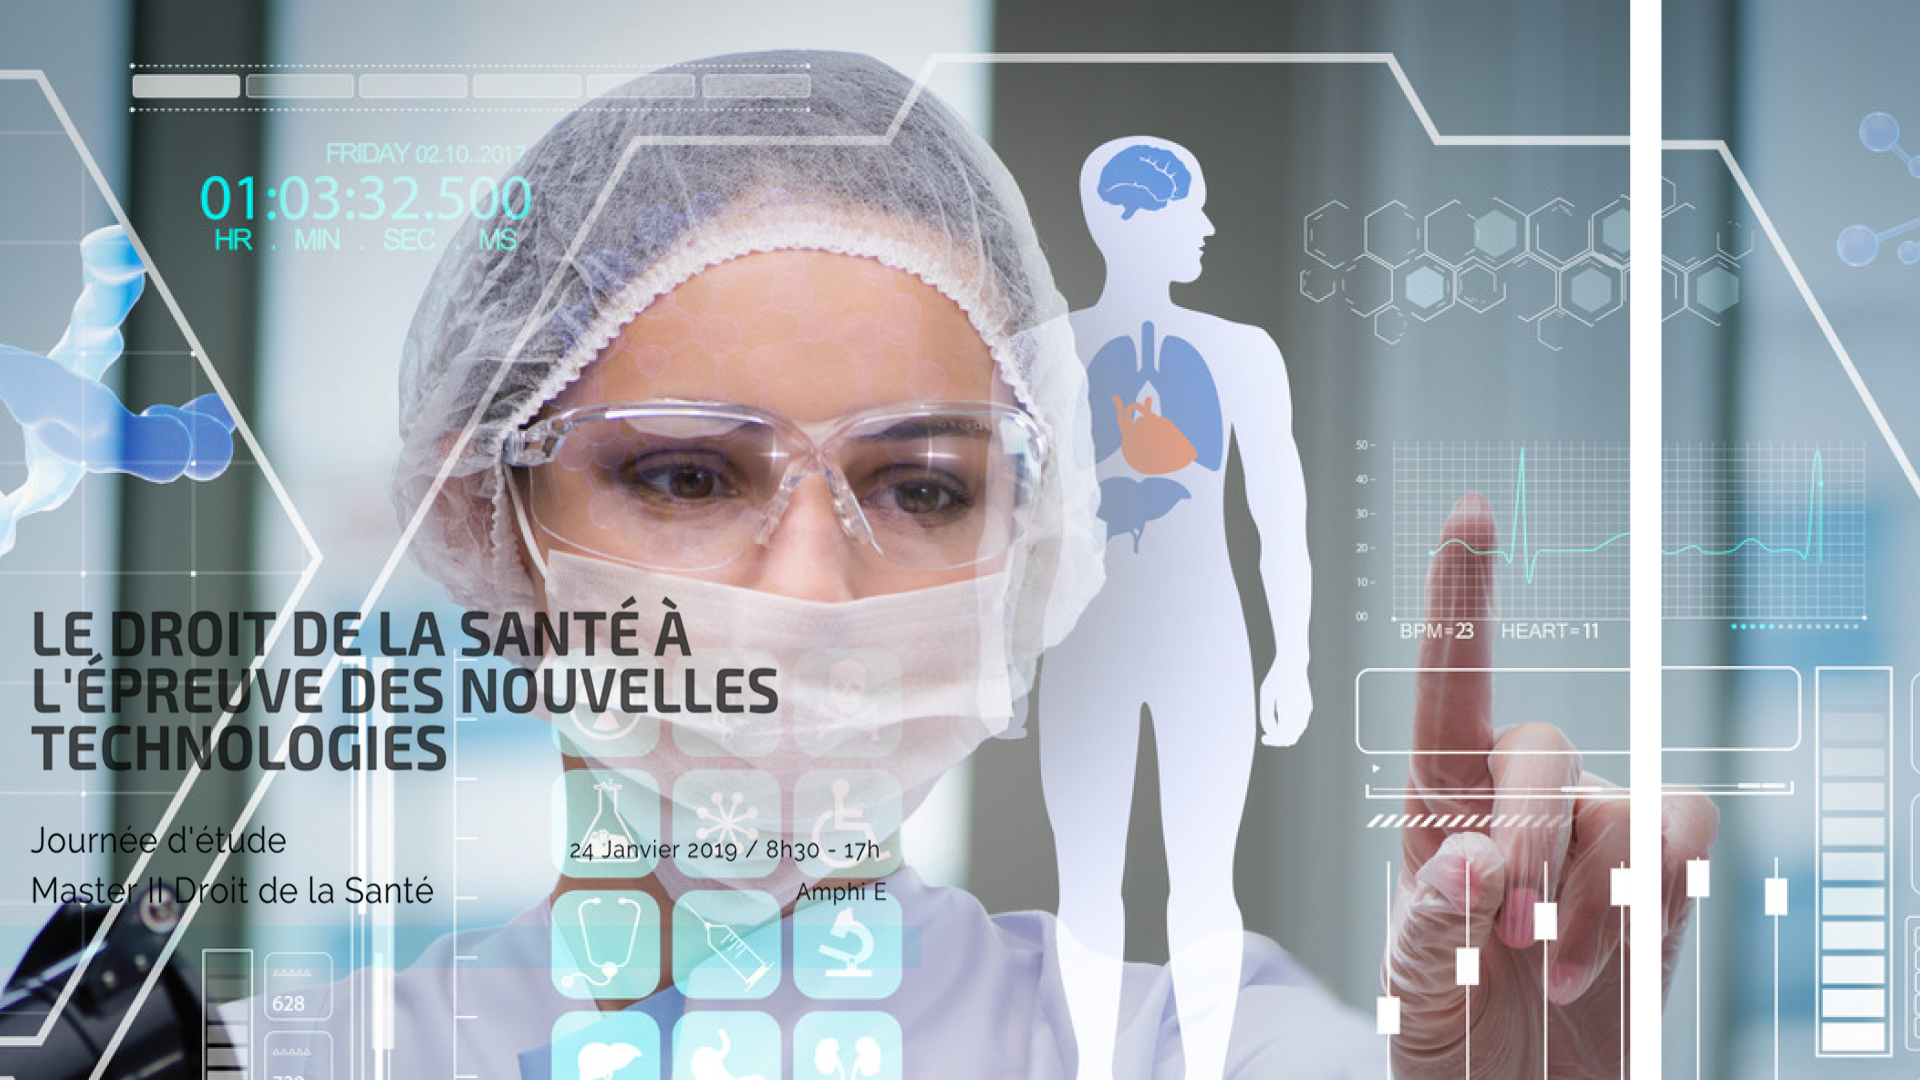 Le droit de la santé à l'épreuve des nouvelles technologies :
Maître François GABORIT